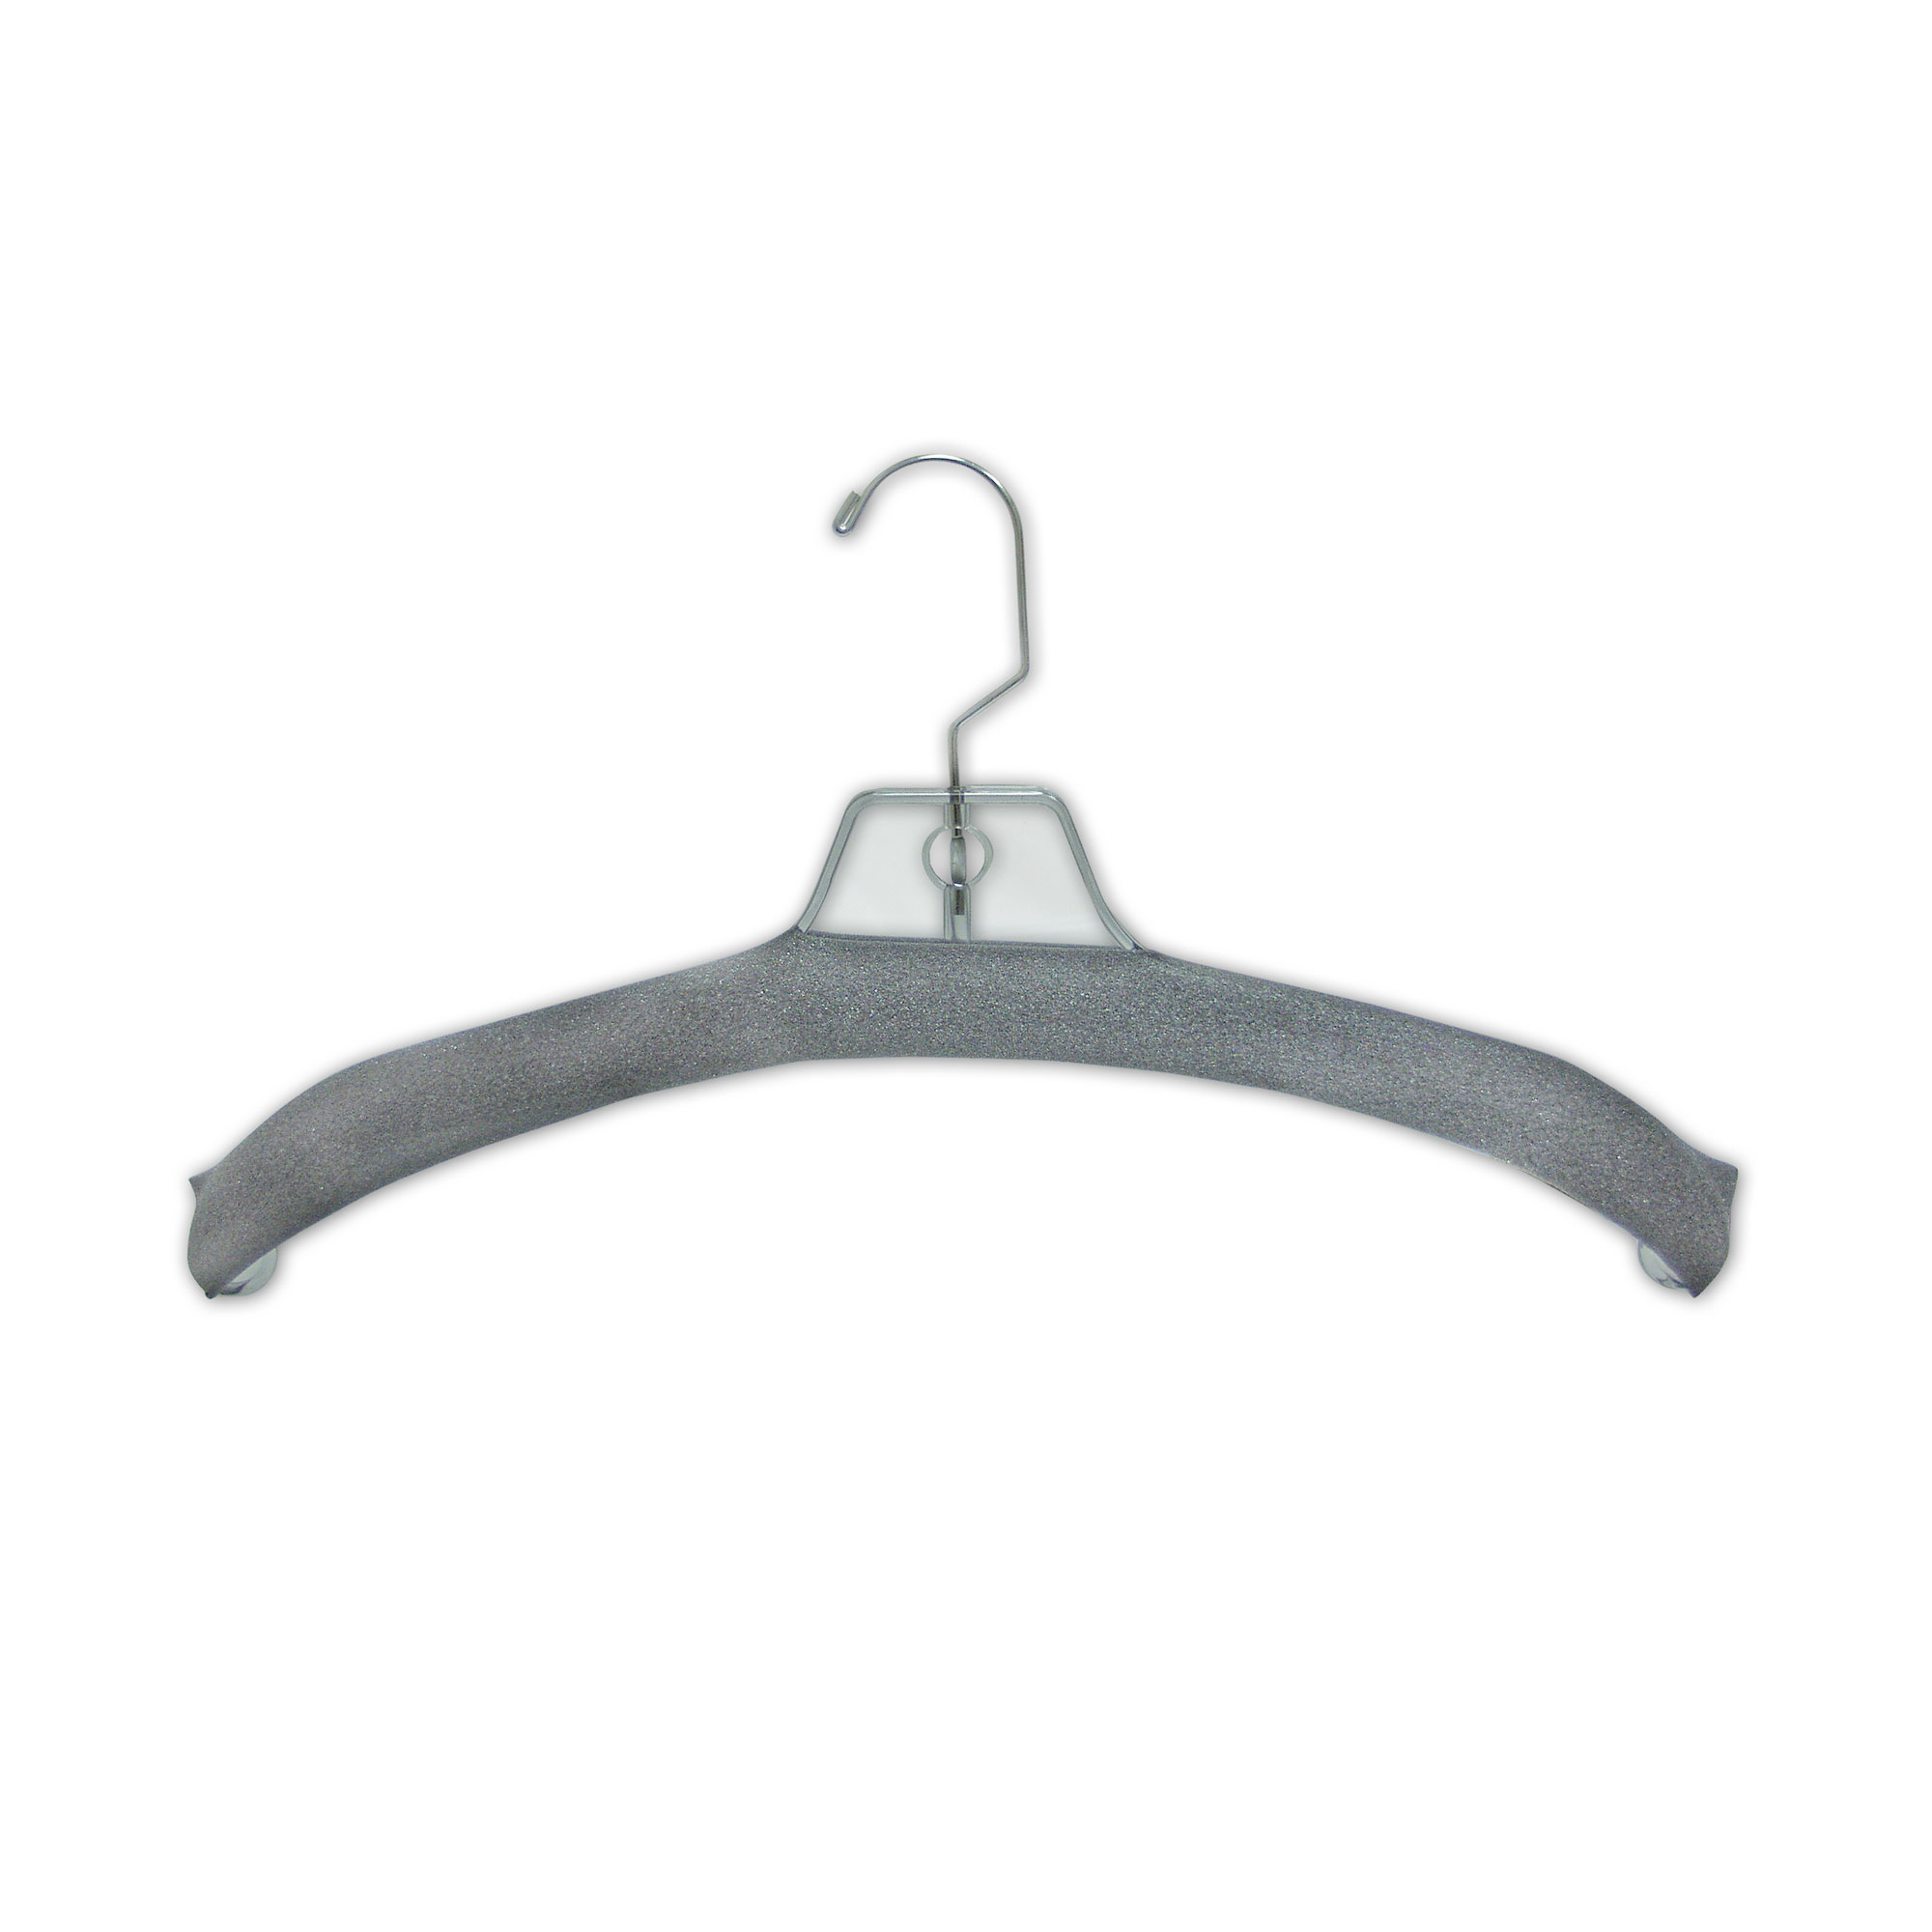 17 Heavy Weight Coat Hanger - ACME Display